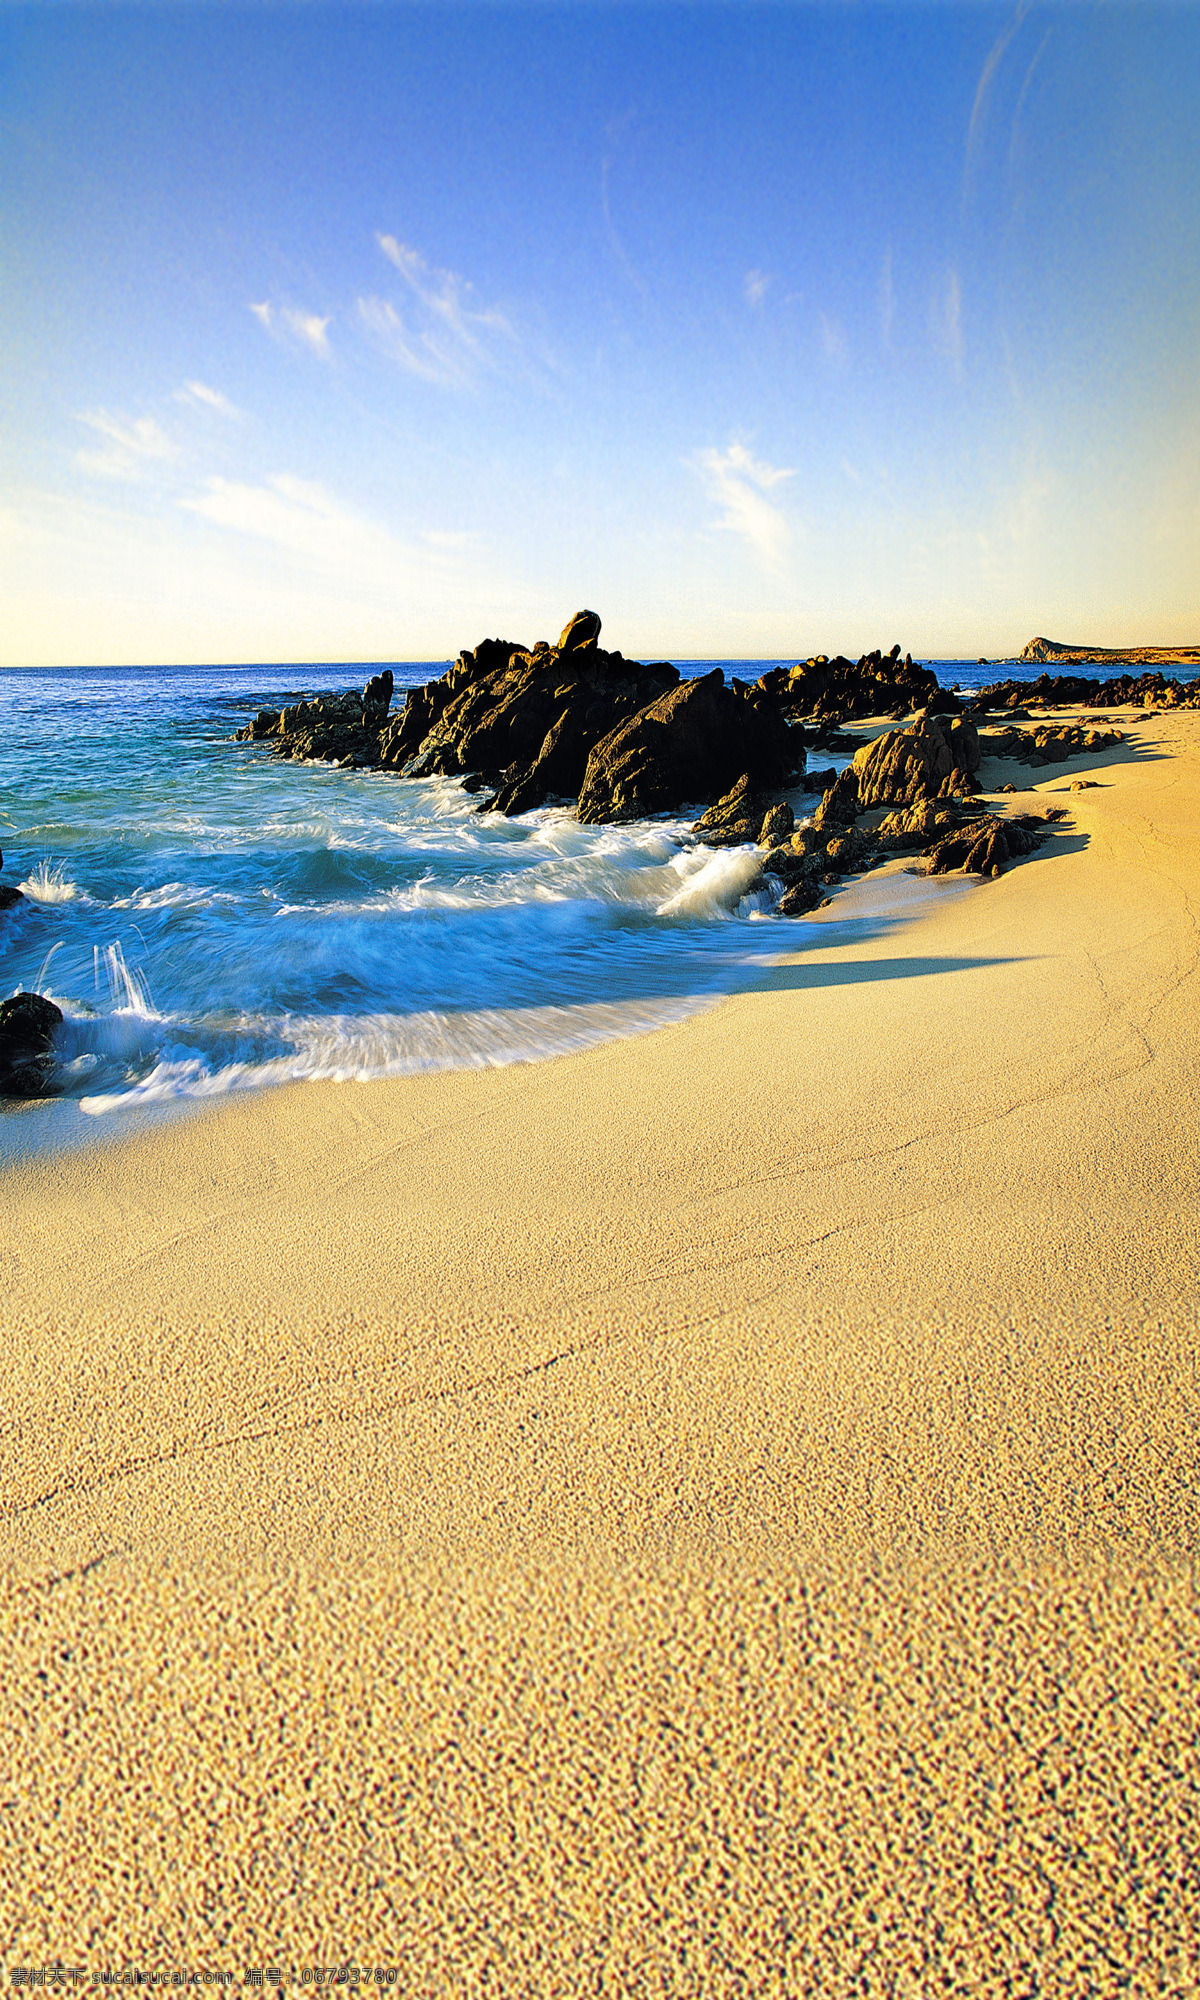 海景 沙滩 大海 阳光 夕阳 天空 蓝天 白云 换景 旅游摄影 自然风景